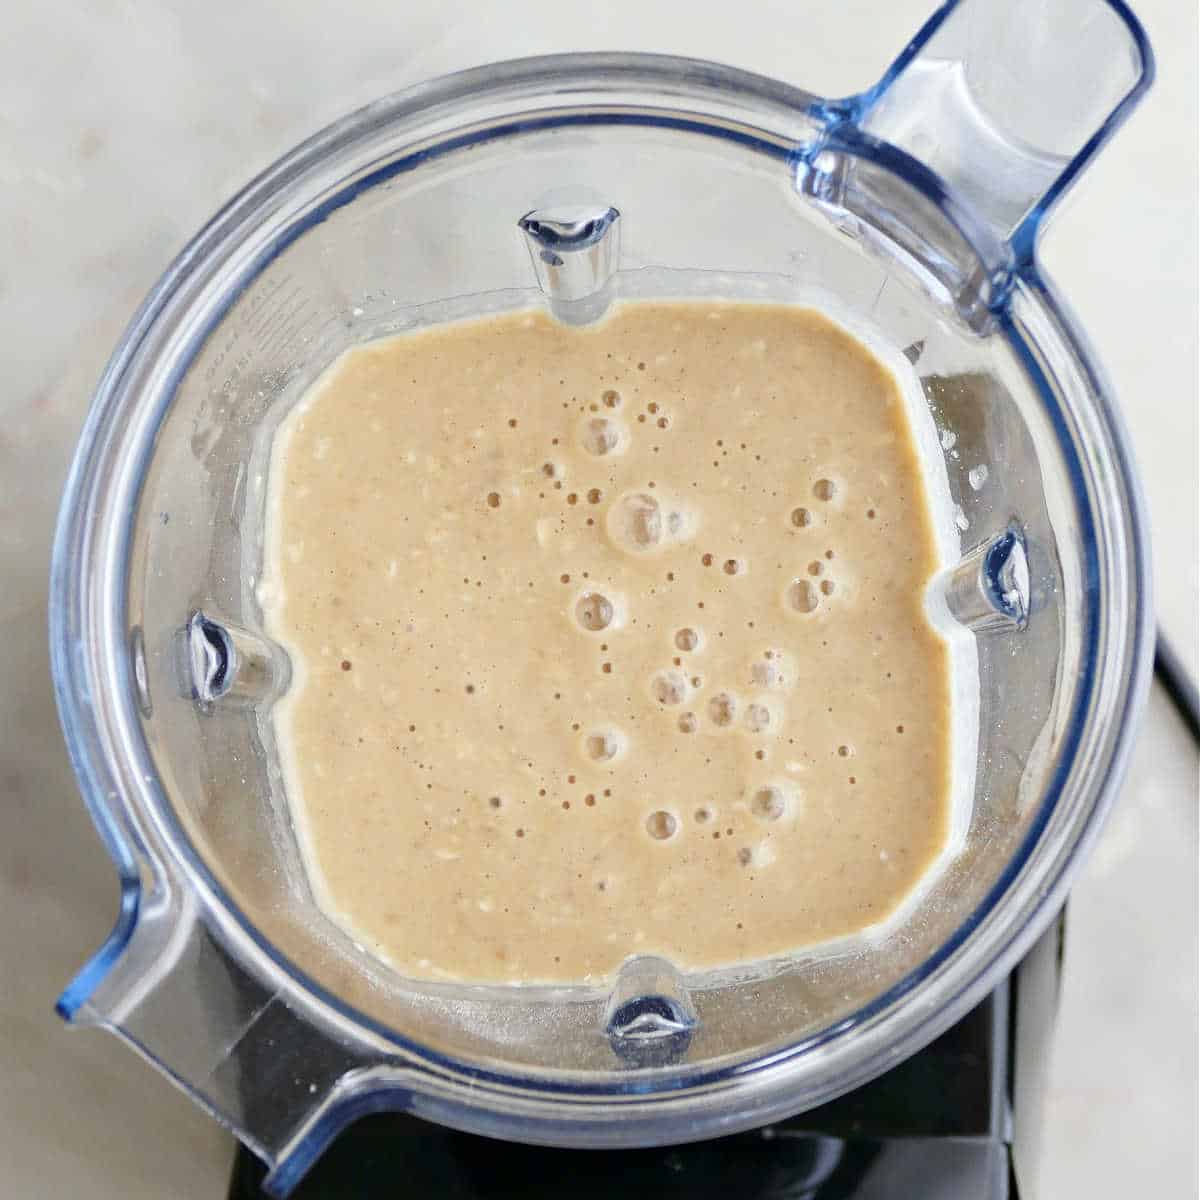 Blended banana pancakes in a blender.